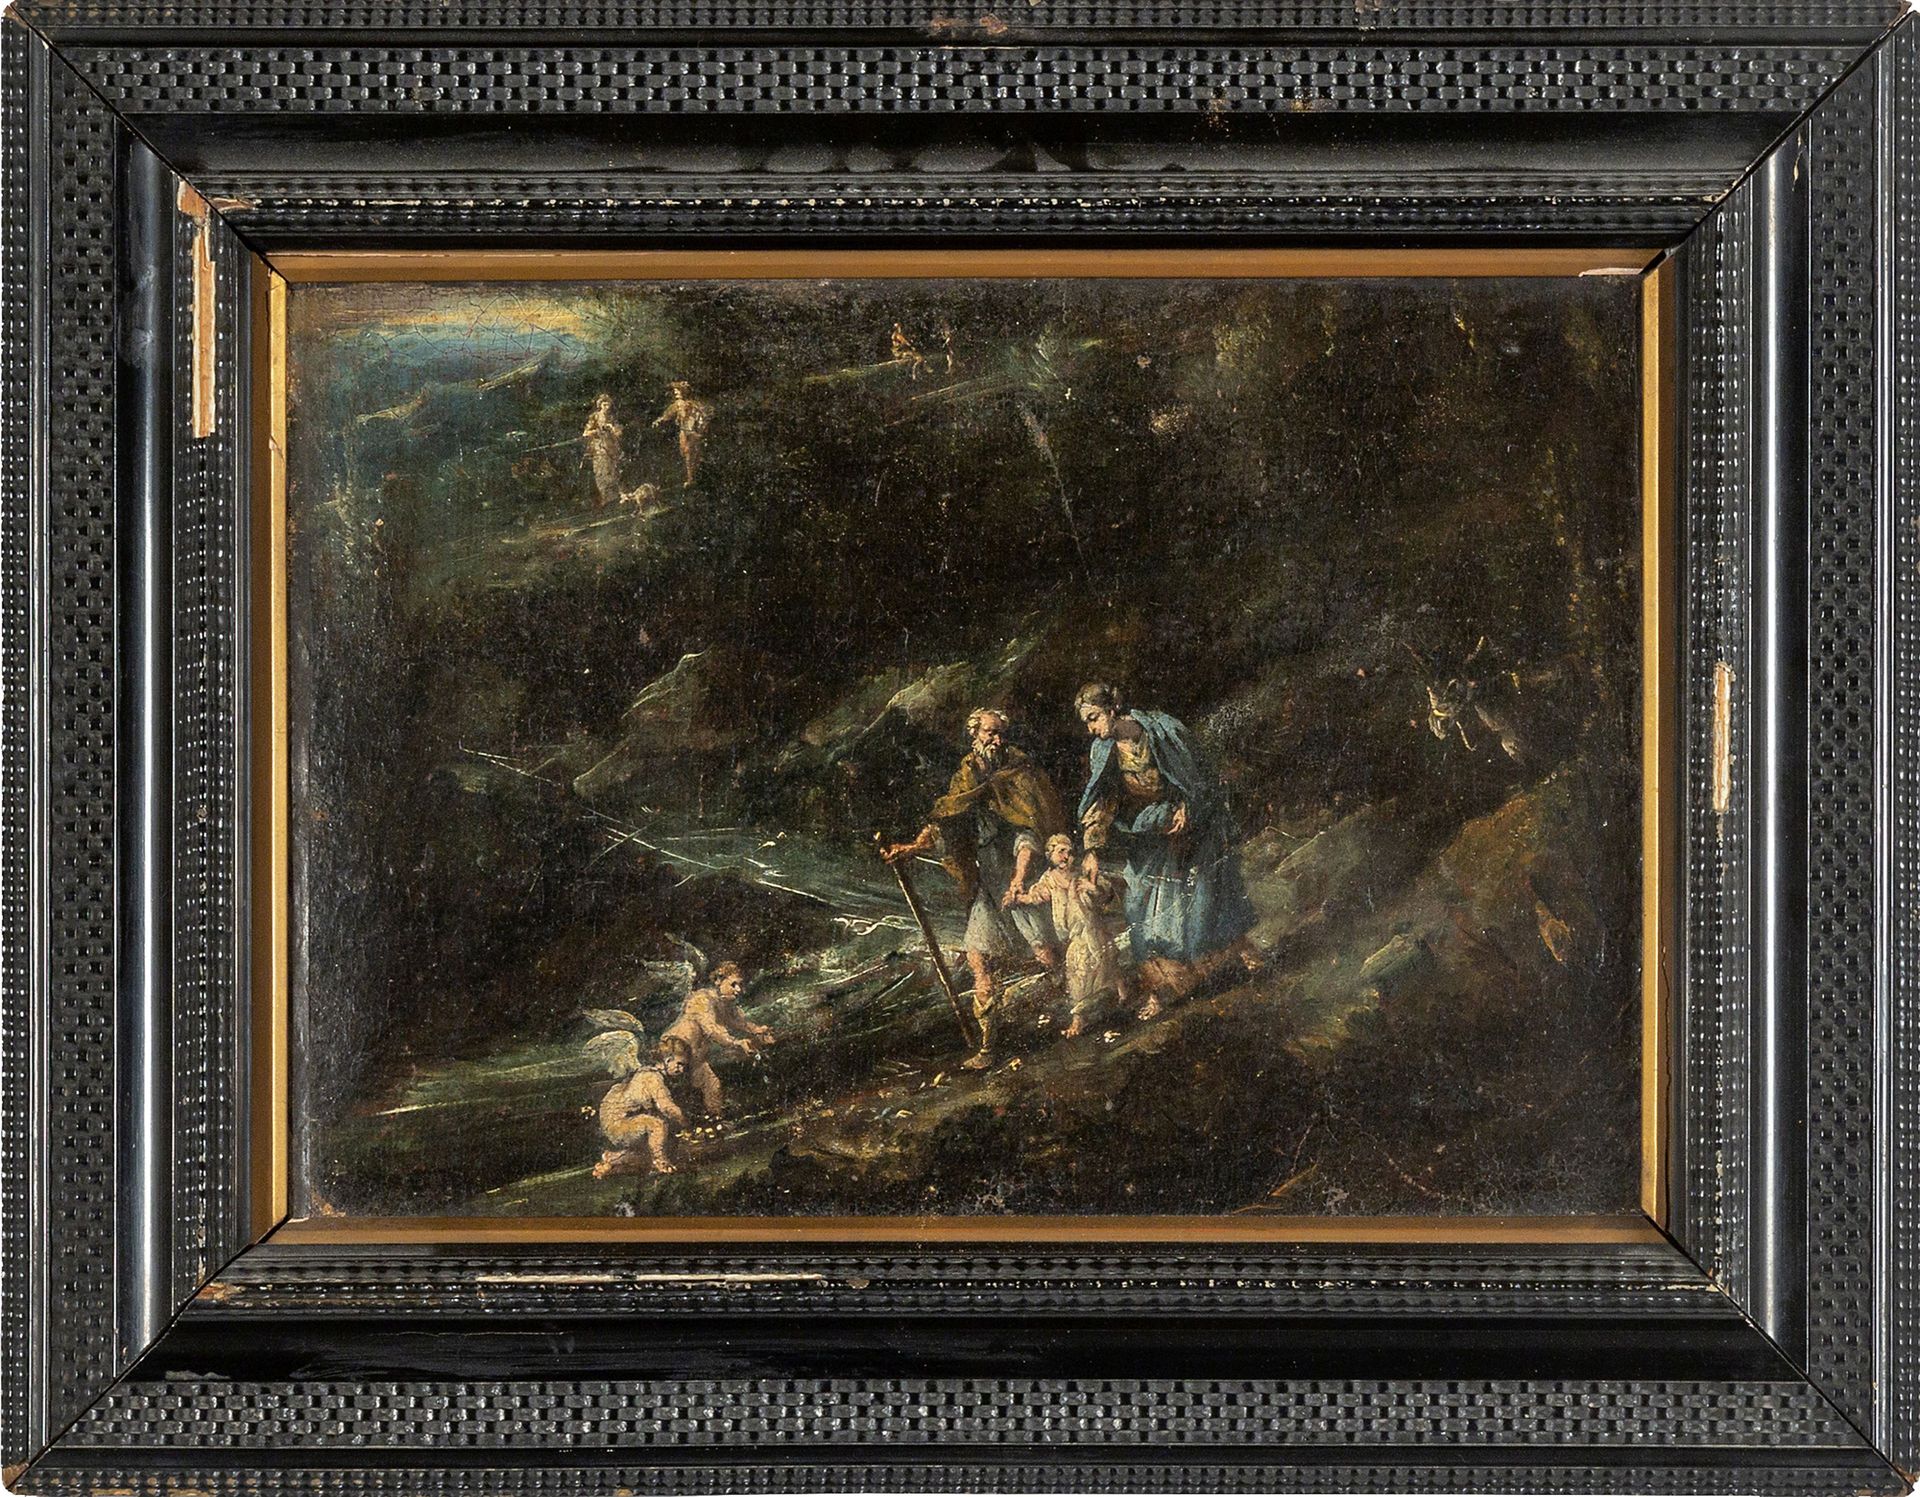 DIPINTO Huile "La fuite en Égypte" 18e siècle
cm. 42x30